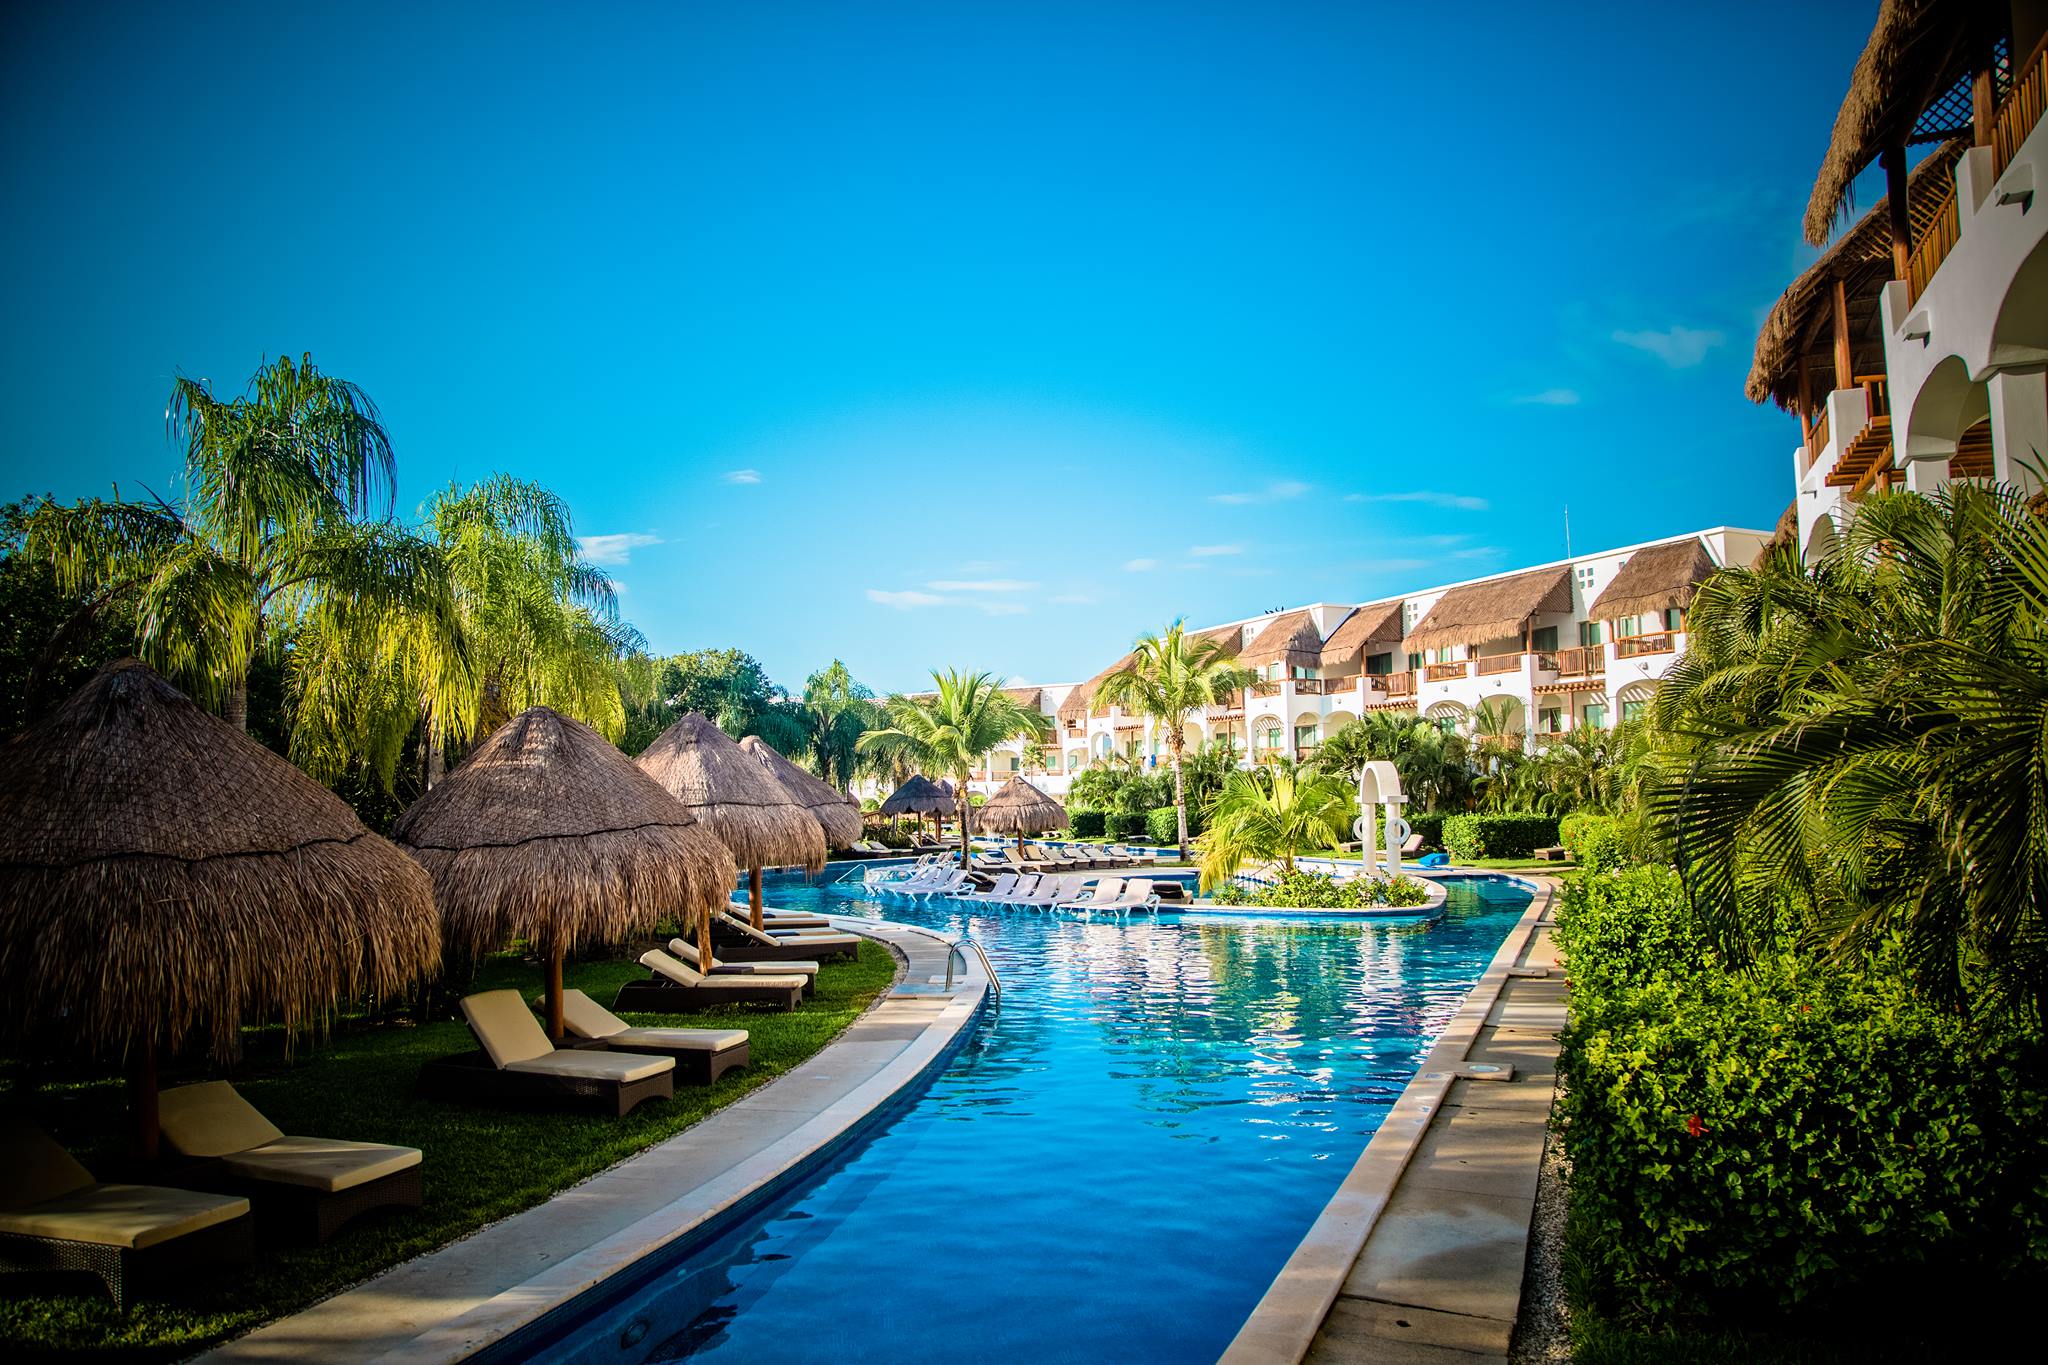 12-12-Destination-Spotlight-Riviera-Maya-BLOG Riviera Maya: Resort Sophistication At Its Finest